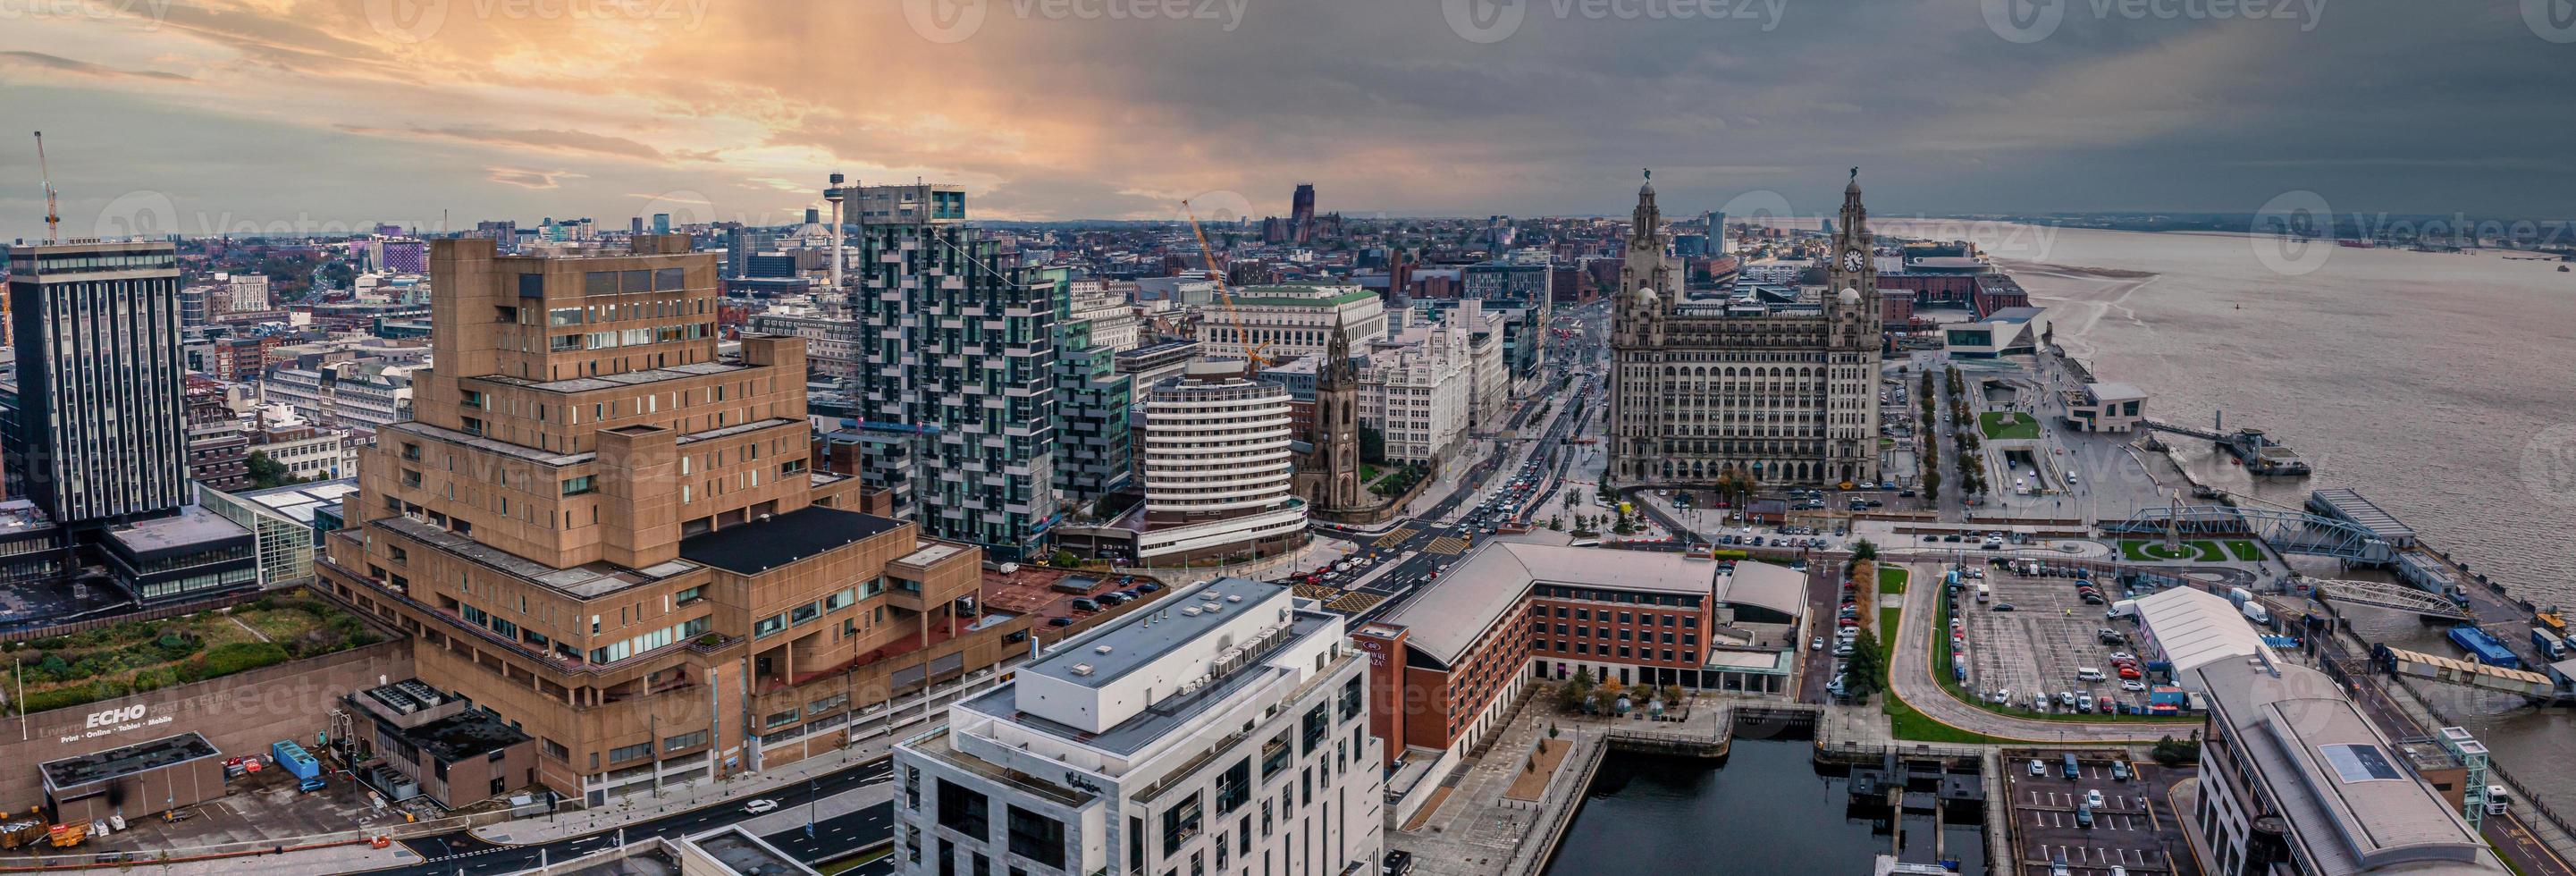 Luftaufnahme der Skyline von Liverpool in Großbritannien foto